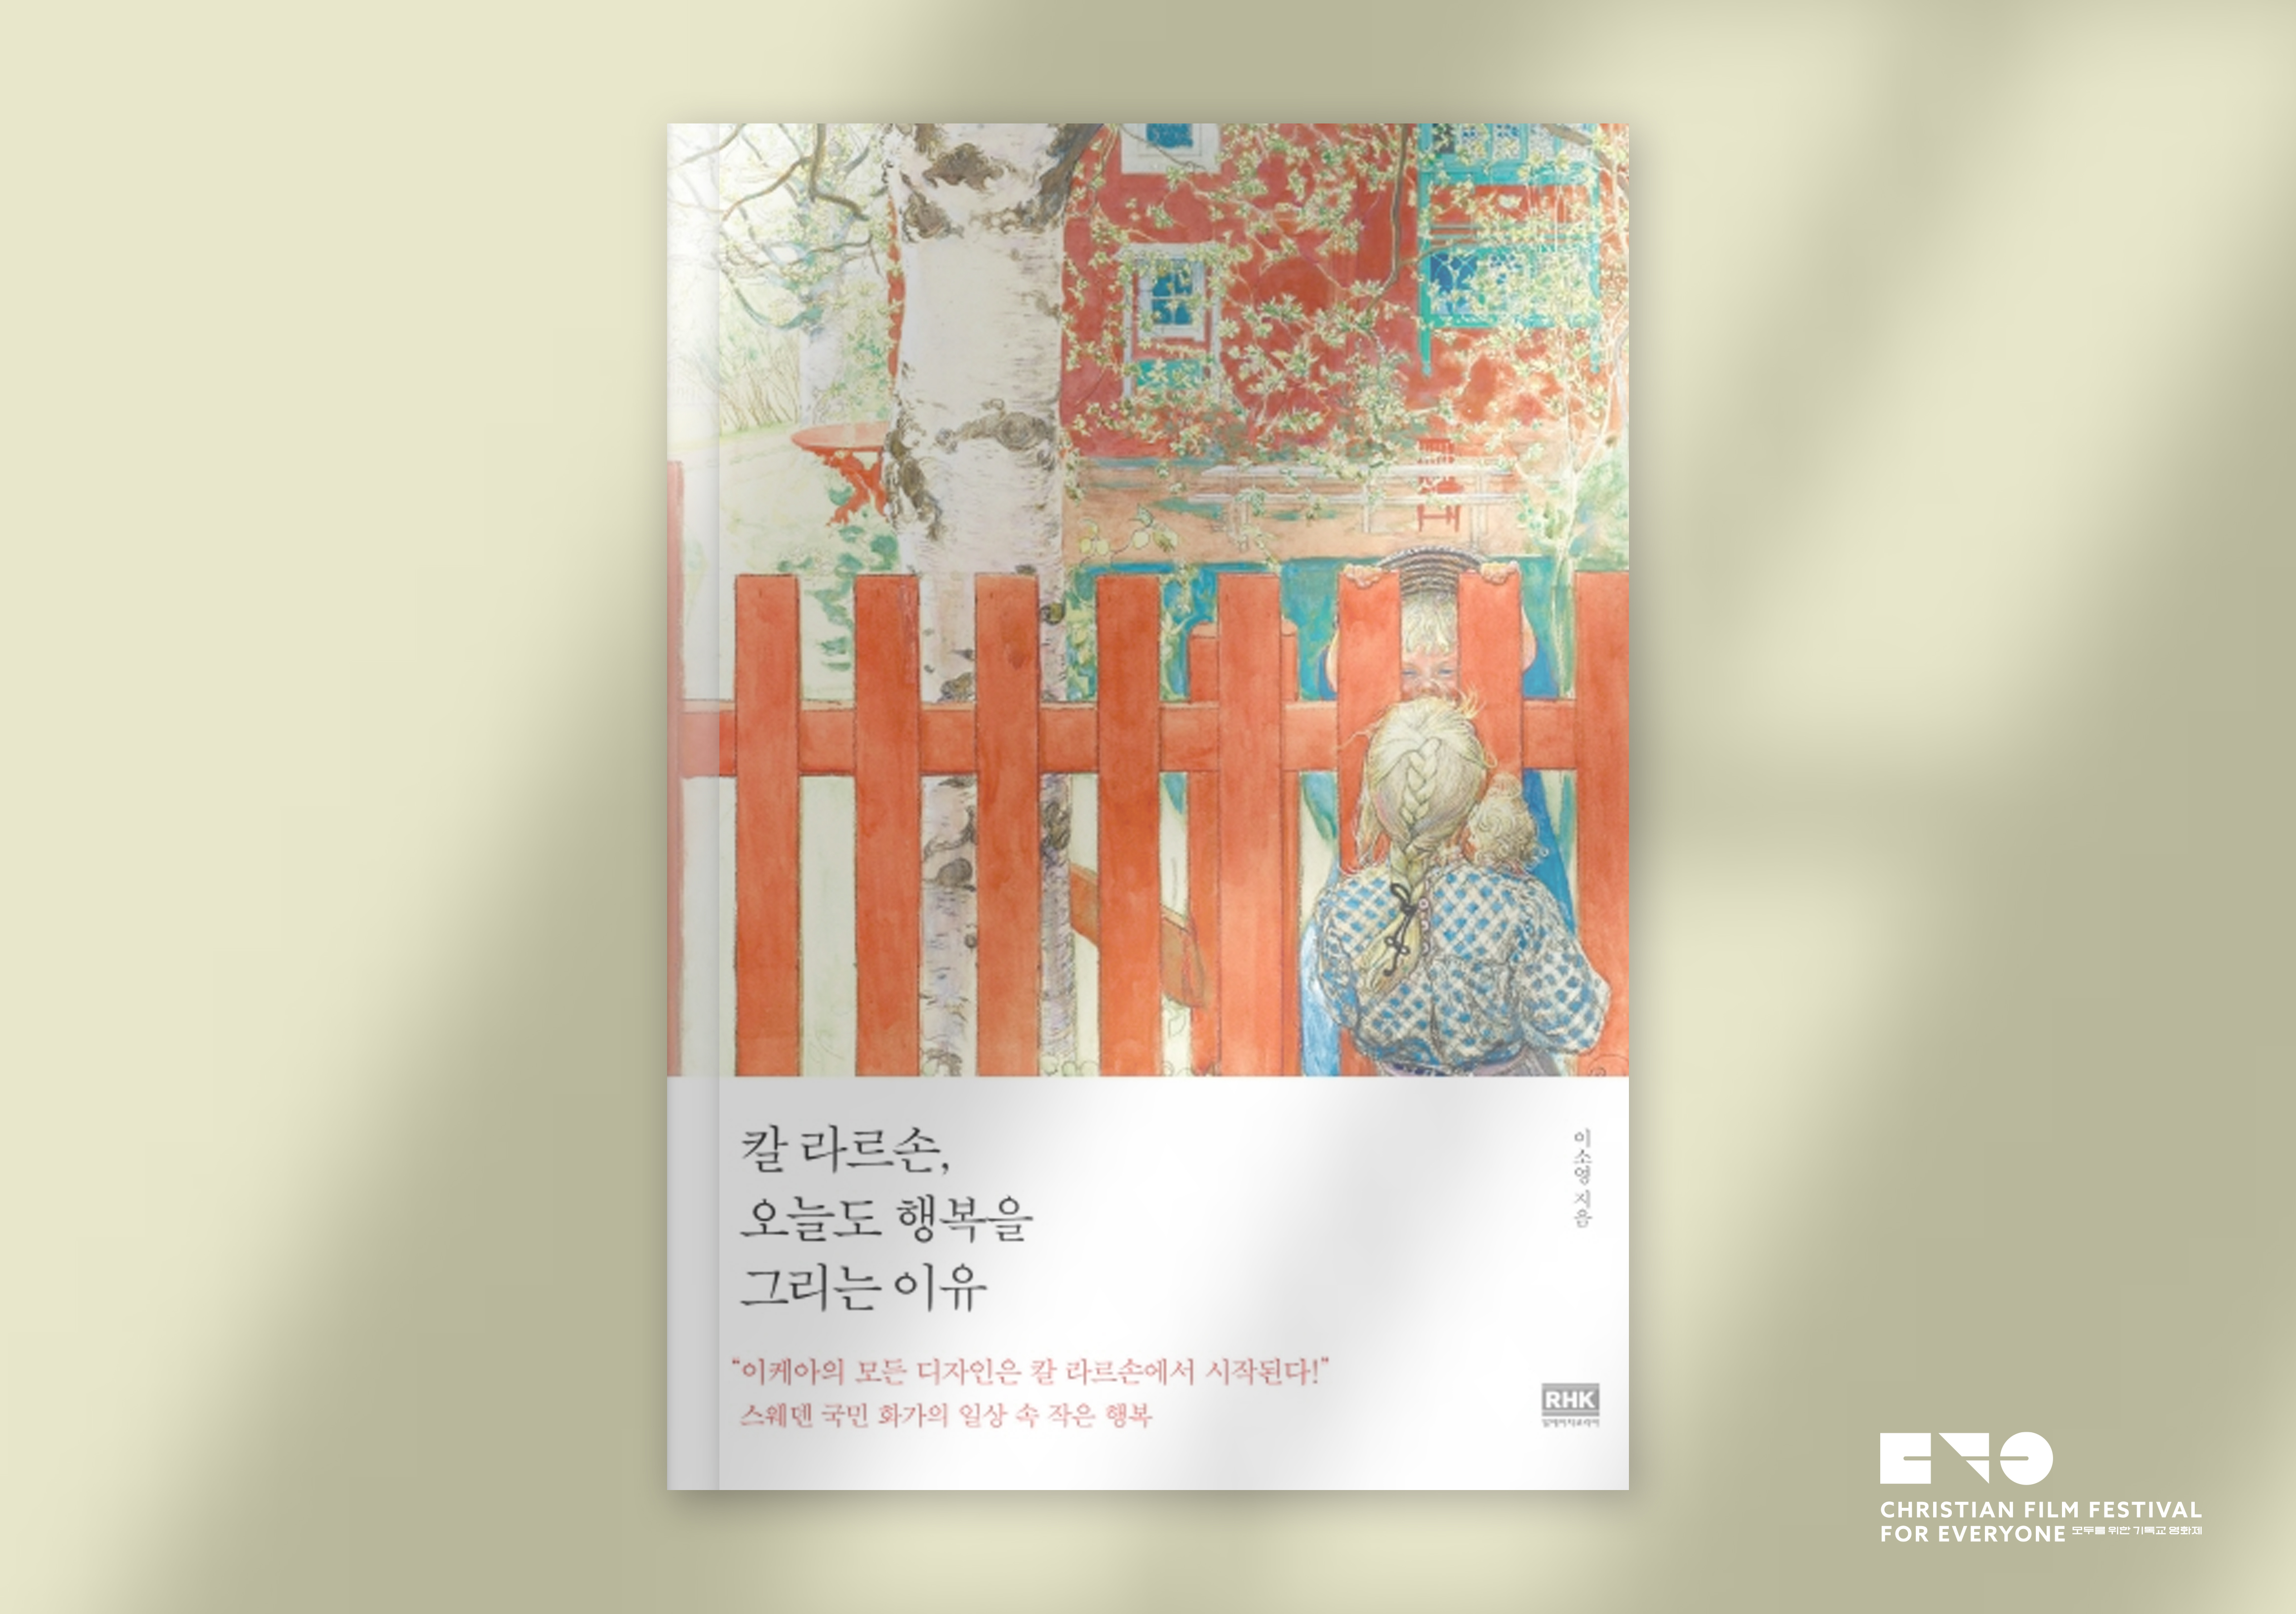  『칼 라르손, 오늘도 행복을 그리는 이유』, 이소영, RHK, 2020.